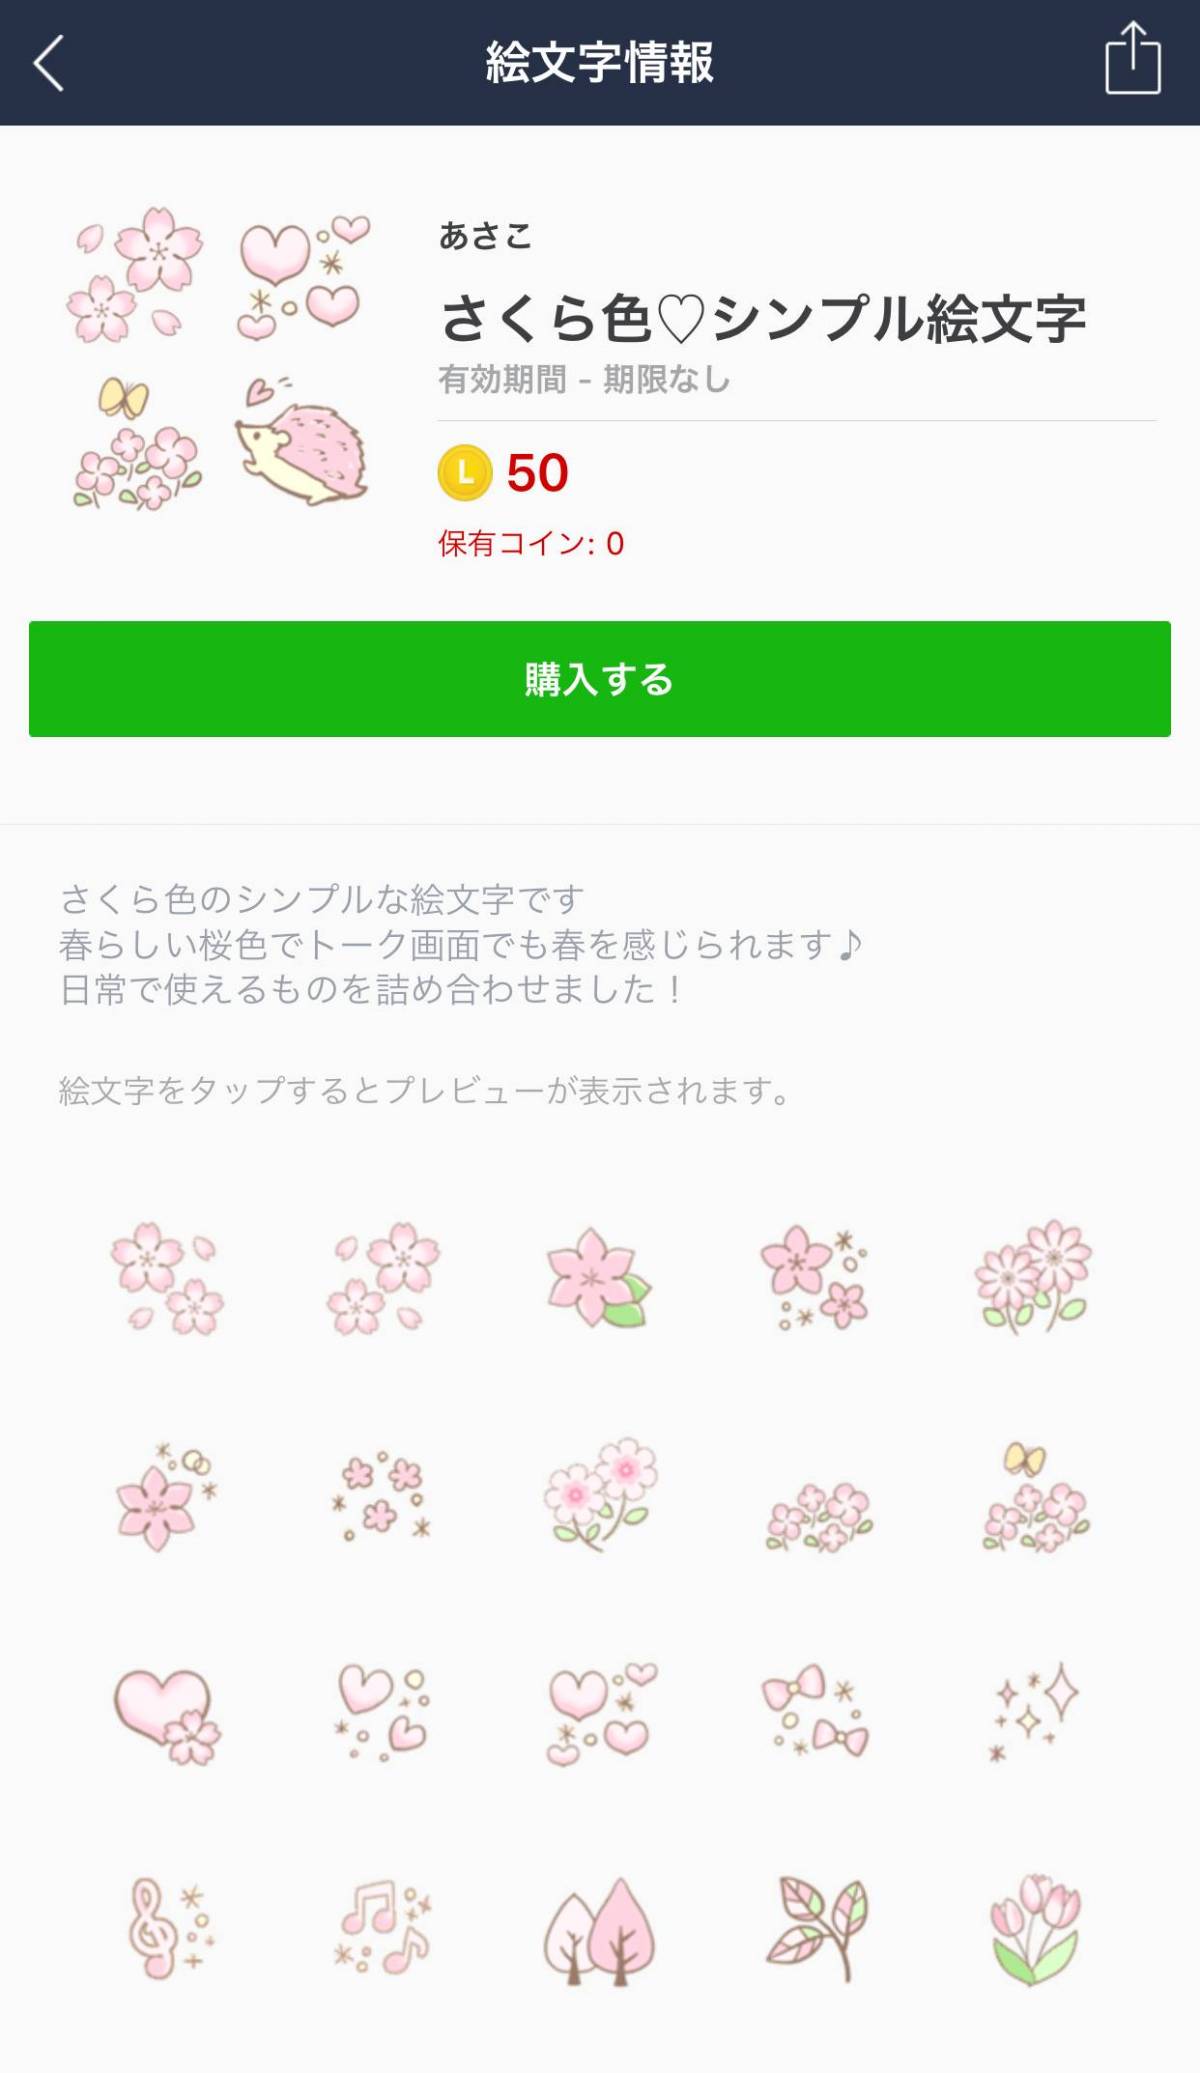 かわいい桜のlineスタンプ 絵文字12選 お花見に誘う時に使いたい の画像 9枚目 Appliv Topics